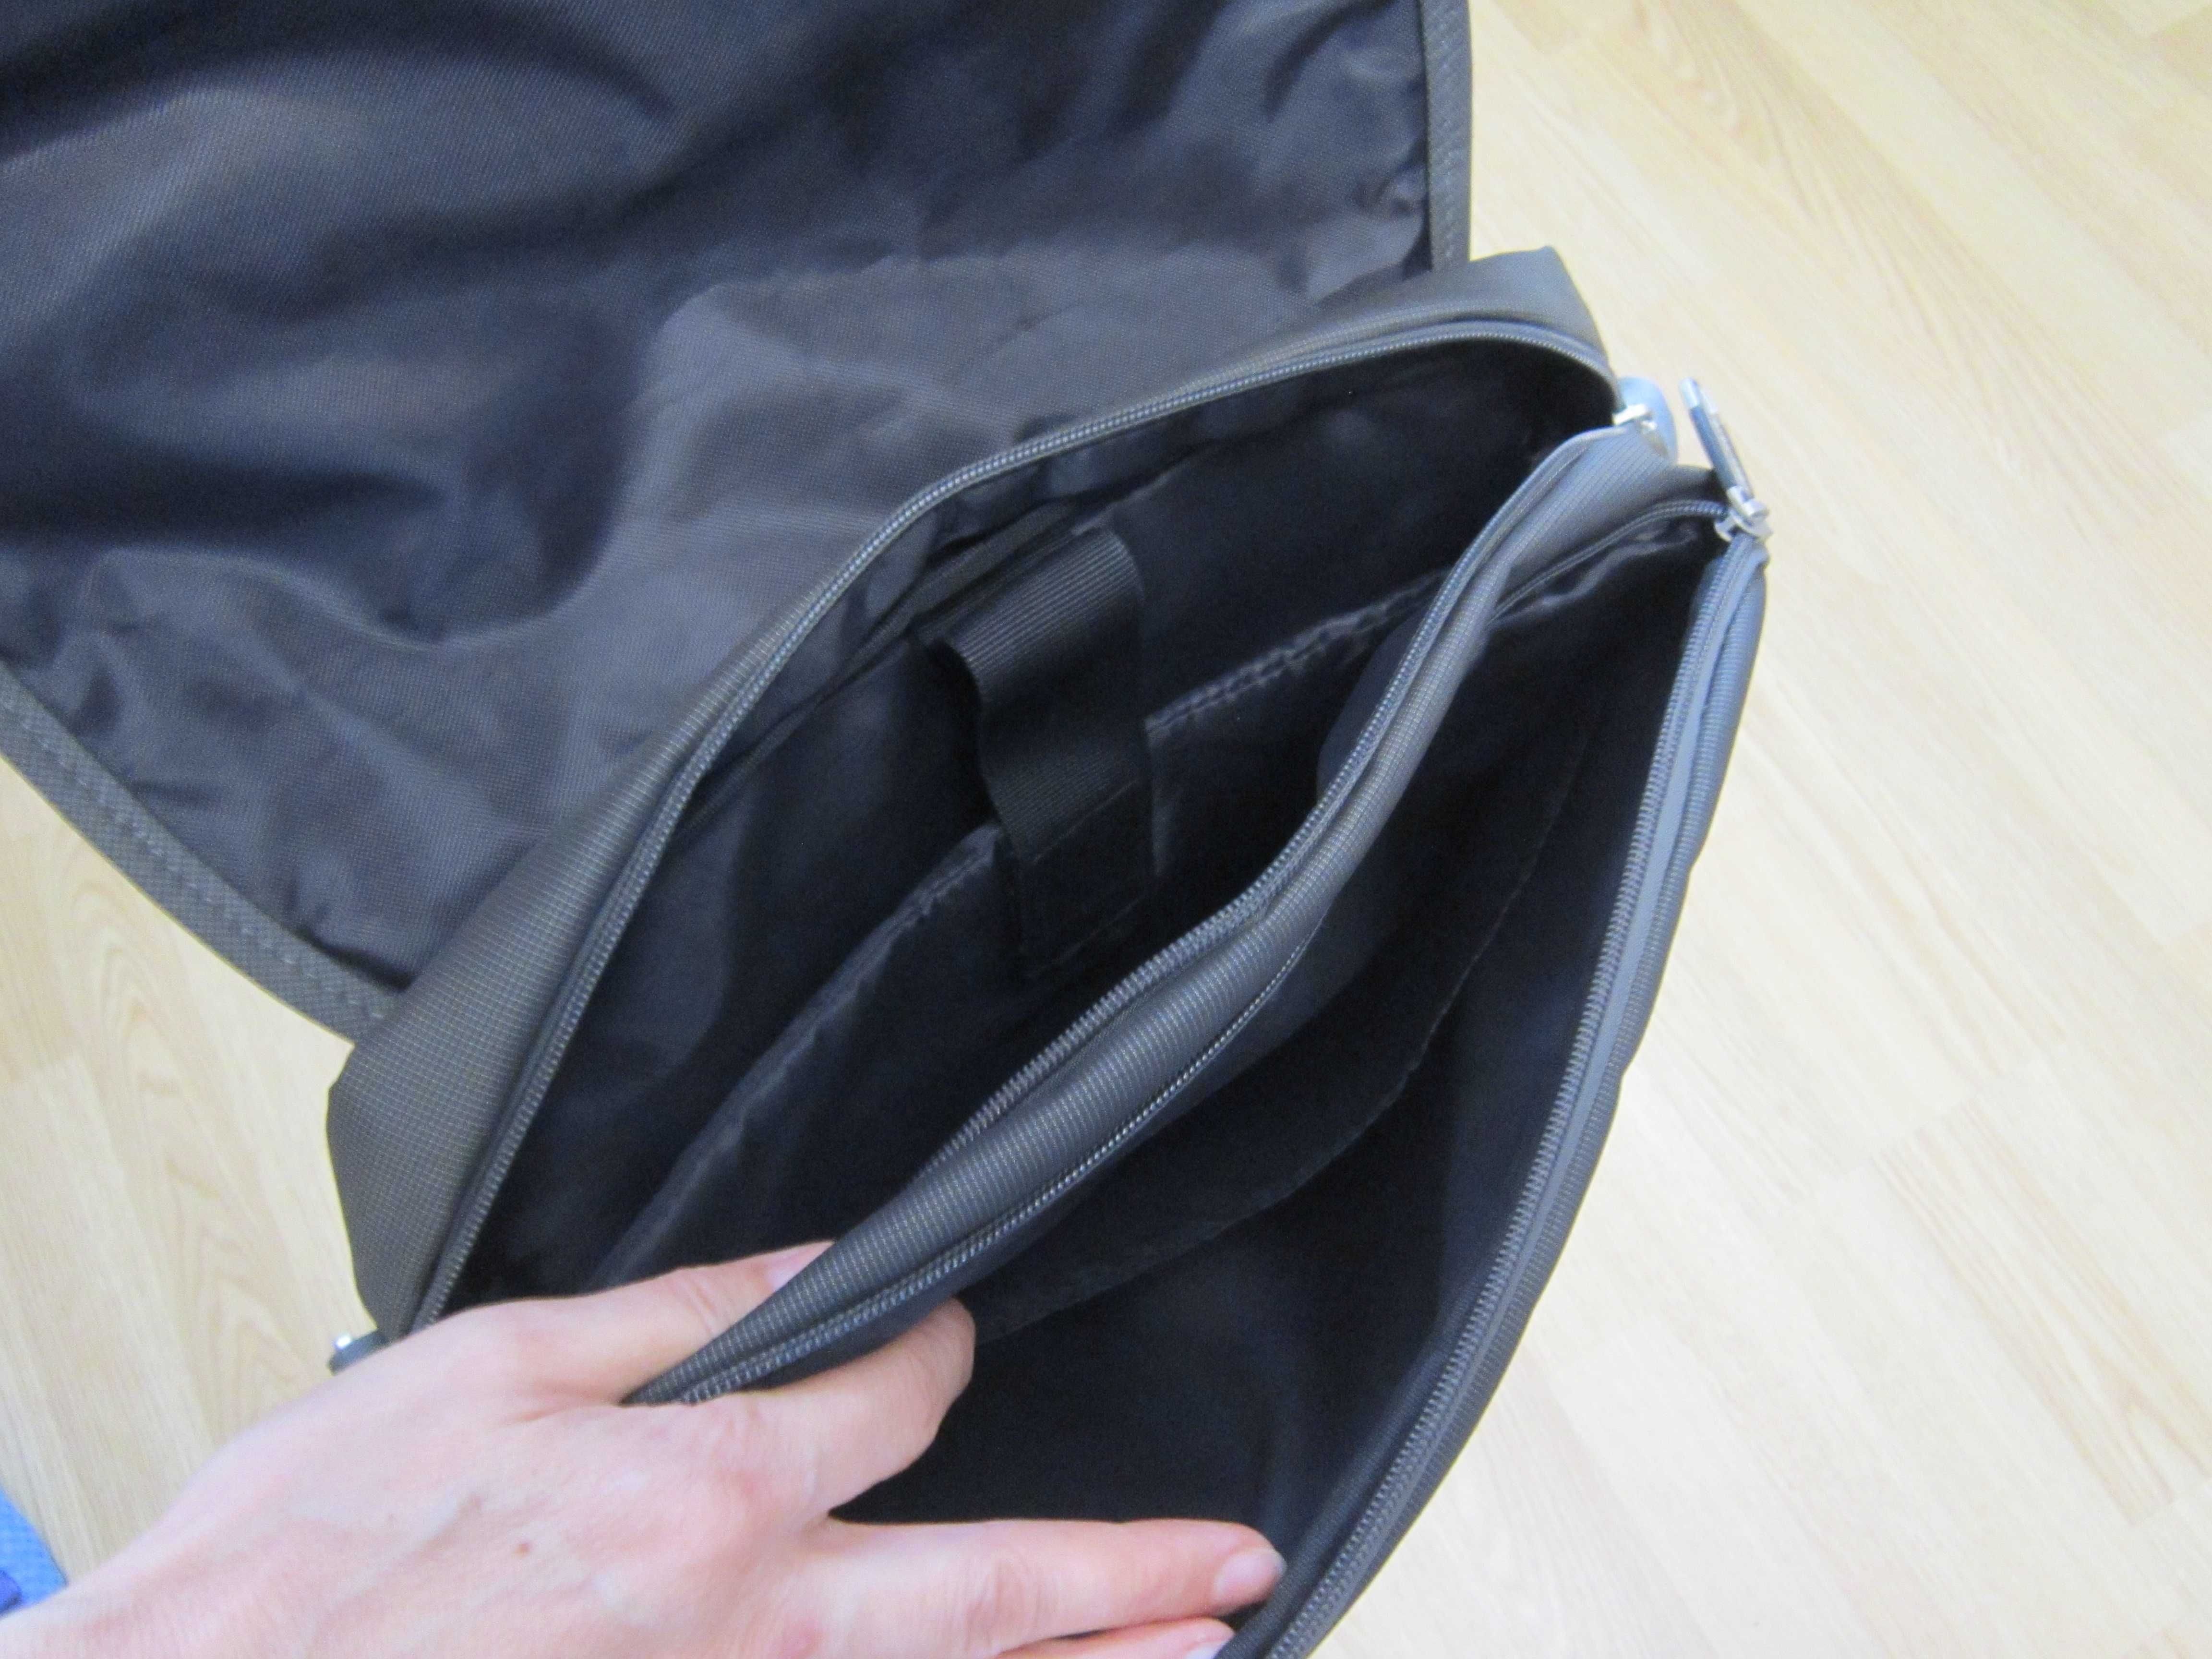 Продам сумку-портфель (через плече) Leadhake